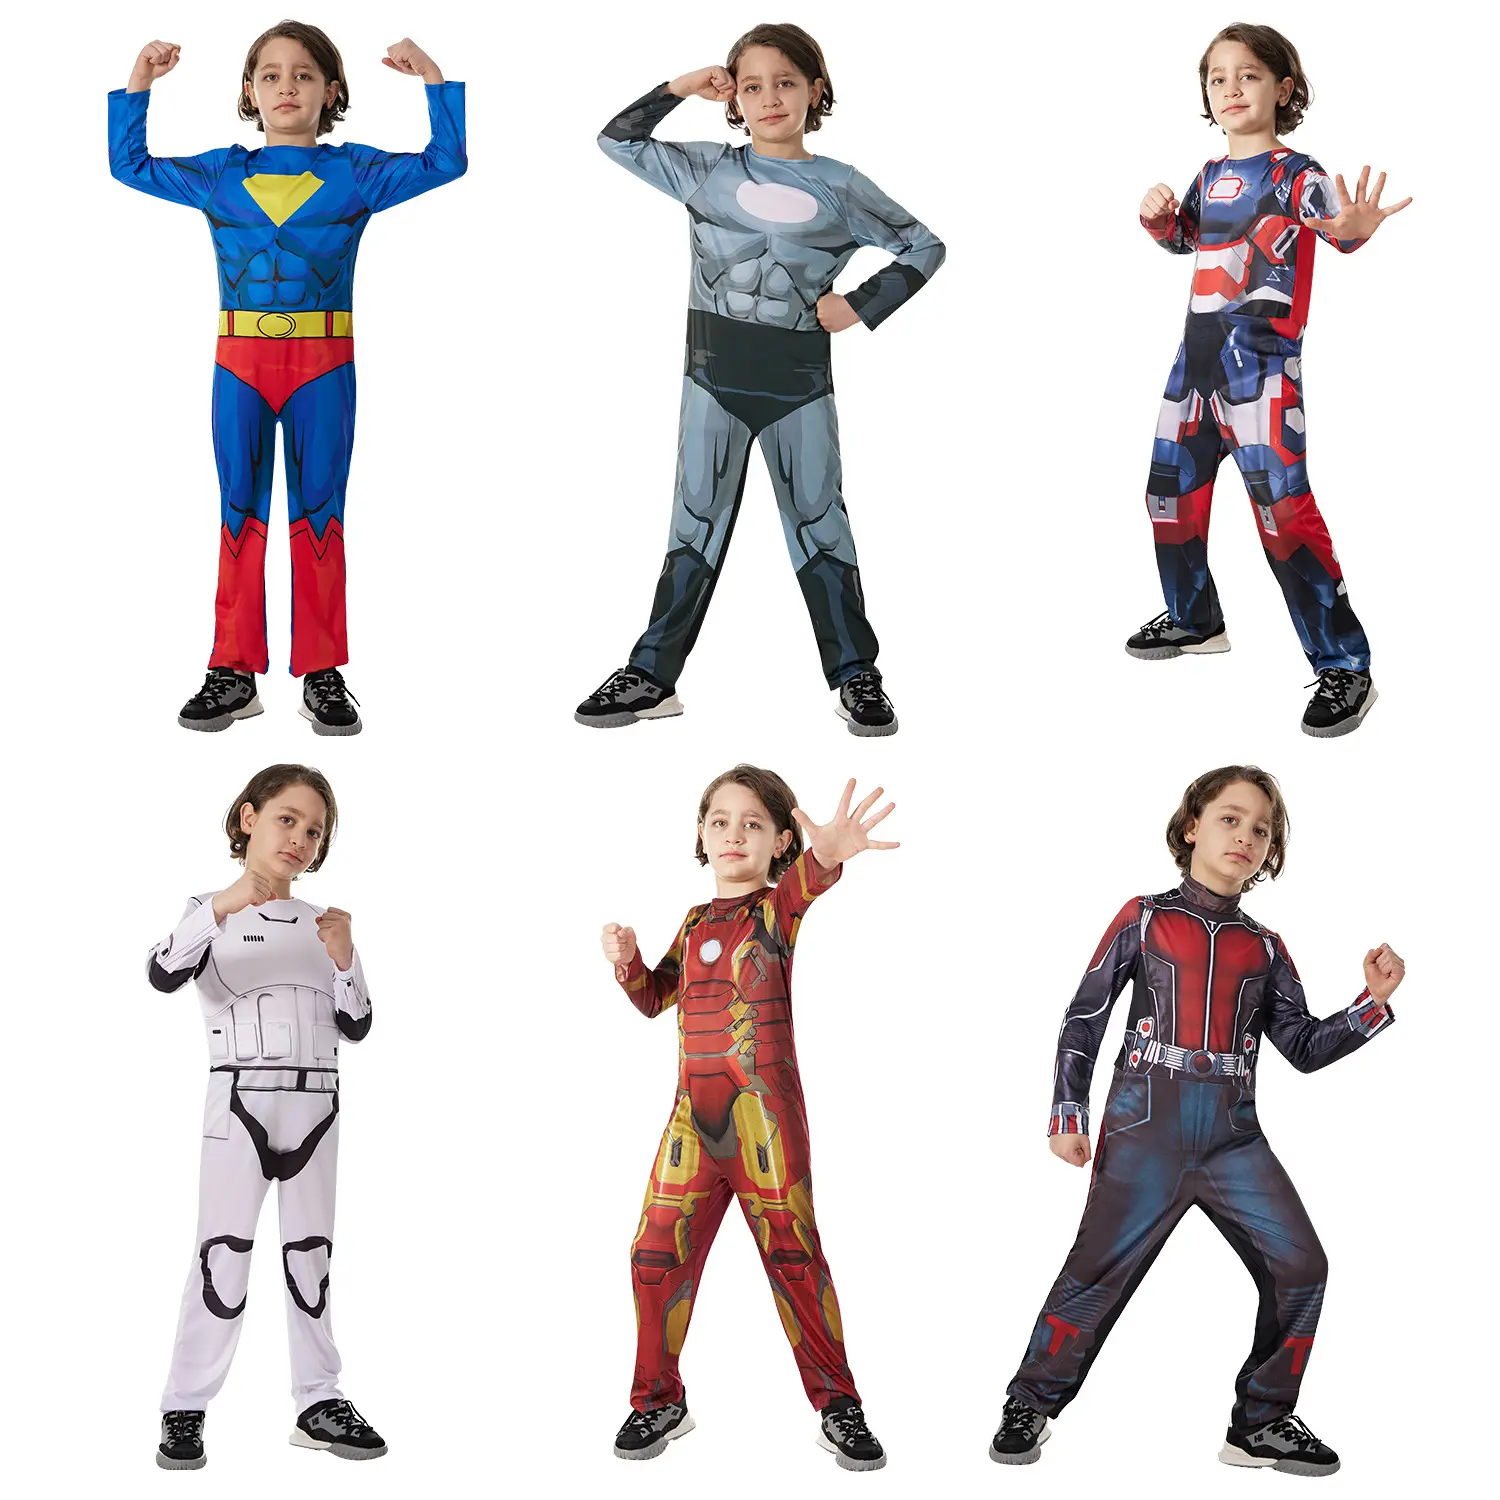 New Style Kinder Super Cool Langarm Jumps uit Karneval Halloween oder Party Cosplay Superhelden Kostüme für Kinder Jungen